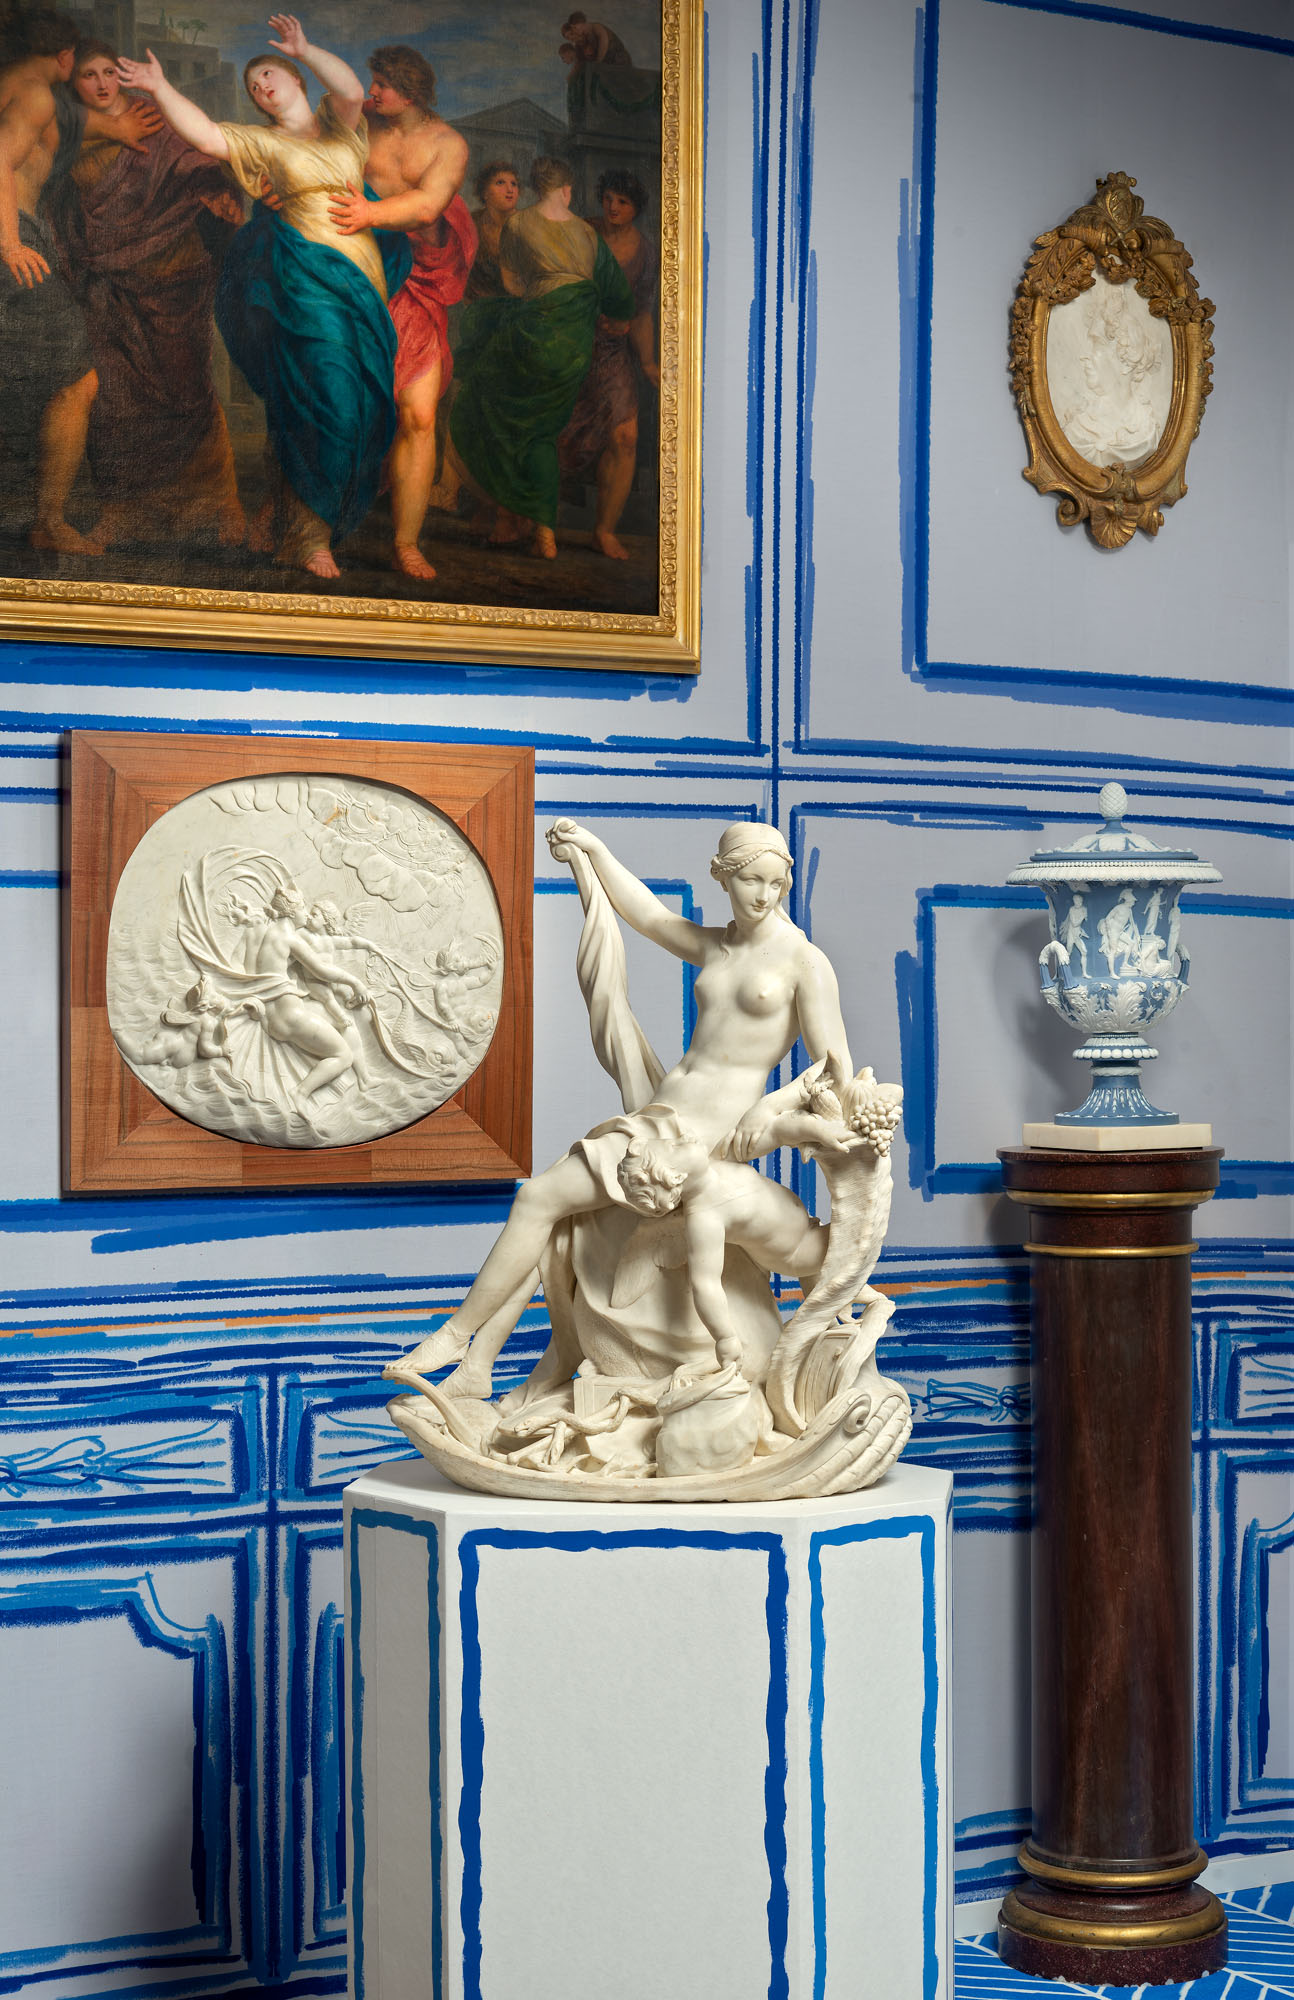 Antoine François Vassé (1681-1736) et Louis Claude Vassé (1716-1772), La Marine. Marbre blanc, 83 cm. Prix : 1,8 million d'euros. Galerie Christophe de Quénetain, Londres.